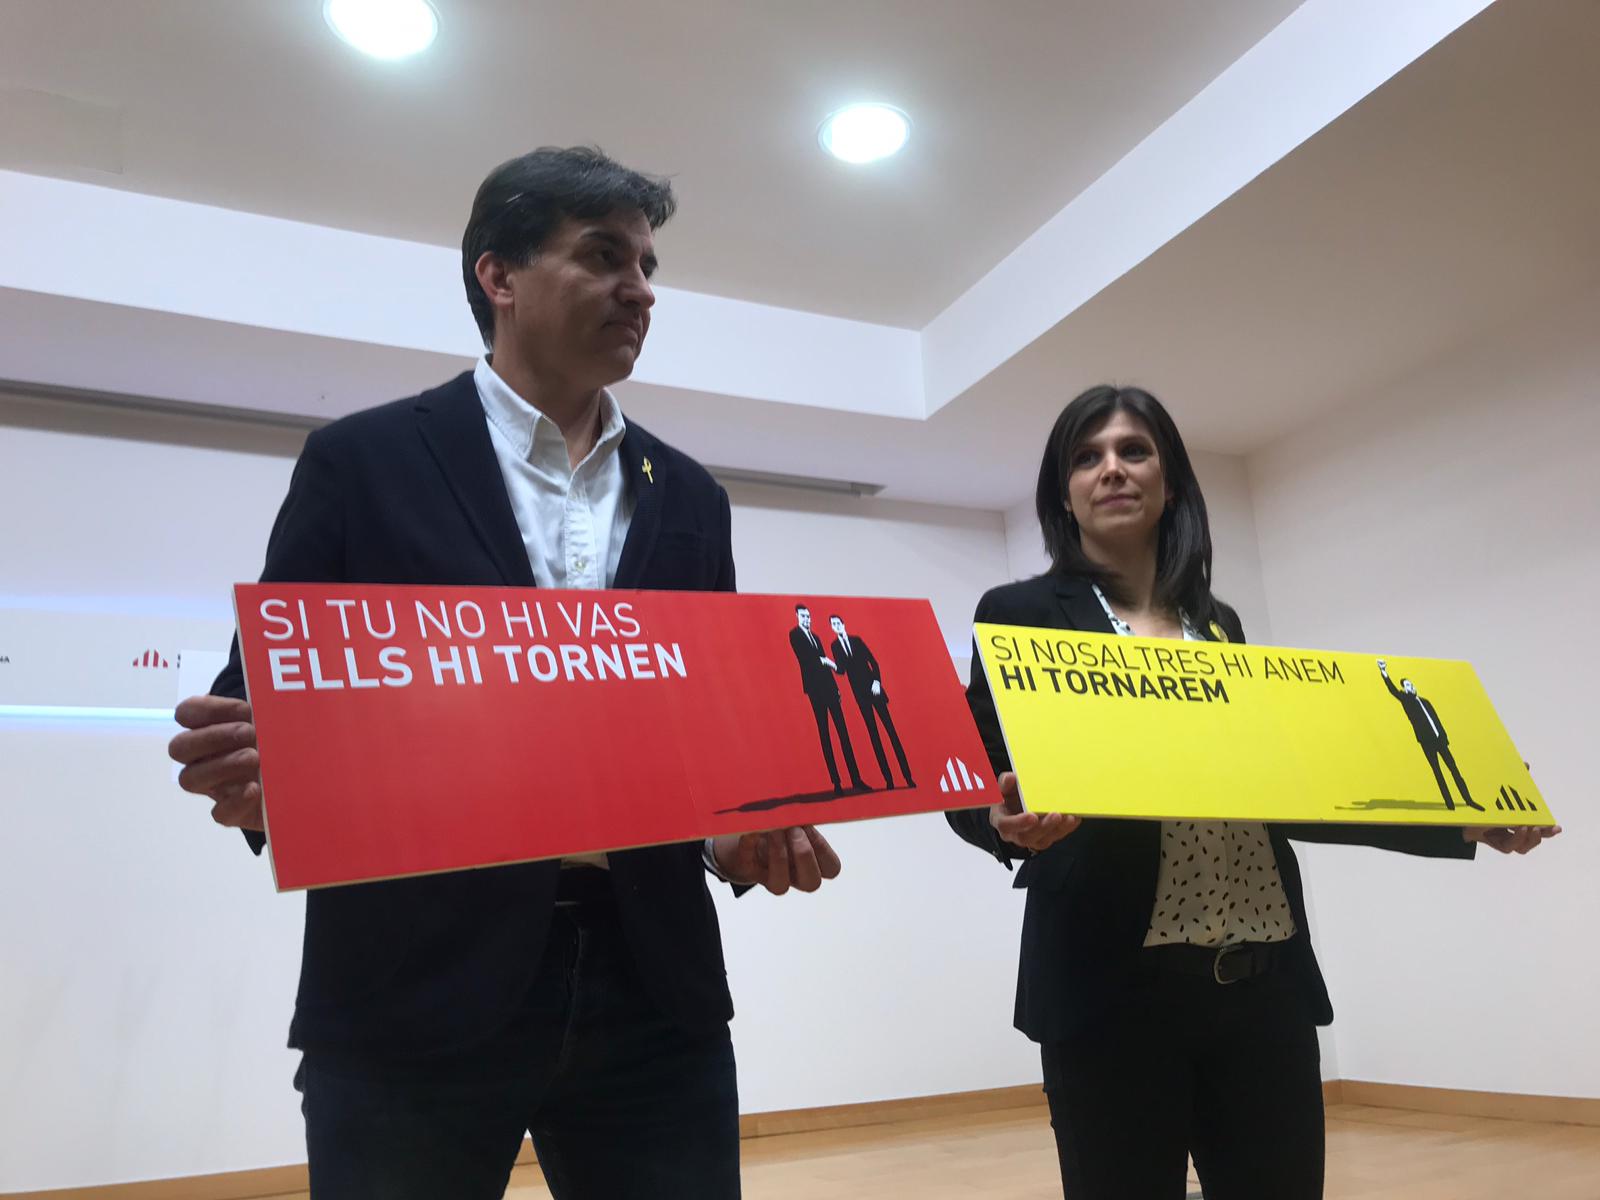 ERC entra en campanya contra Sánchez: "Votar el PSOE és el mateix que votar Cs"